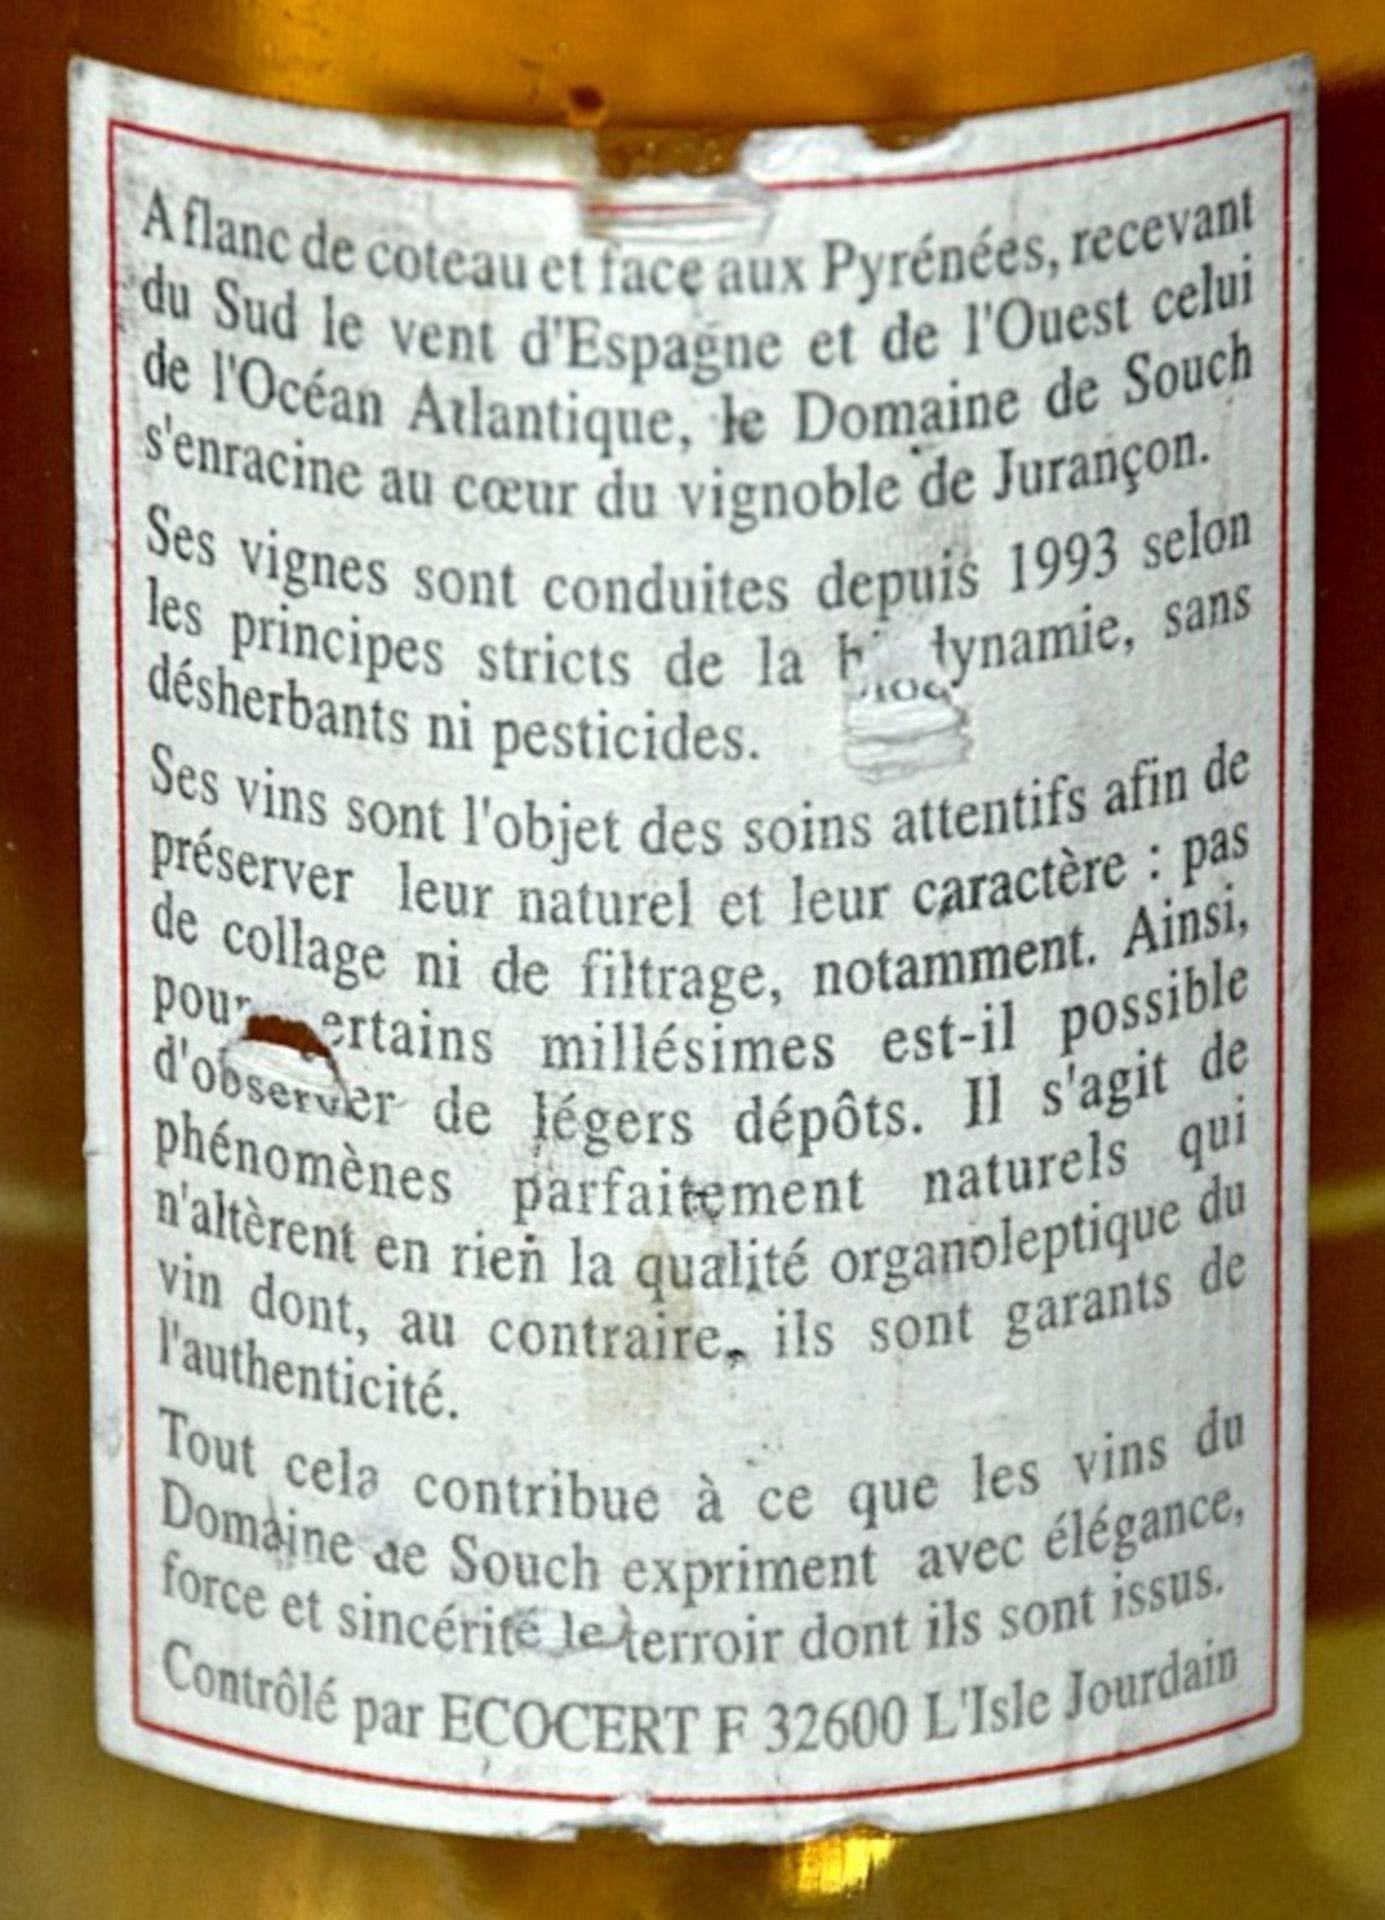 1 x Domaine de Souch Cuvee Marie Kattalin, Jurancon, France – 2004 - Volume 12.5% - 75cl – Ref W1069 - Image 3 of 3